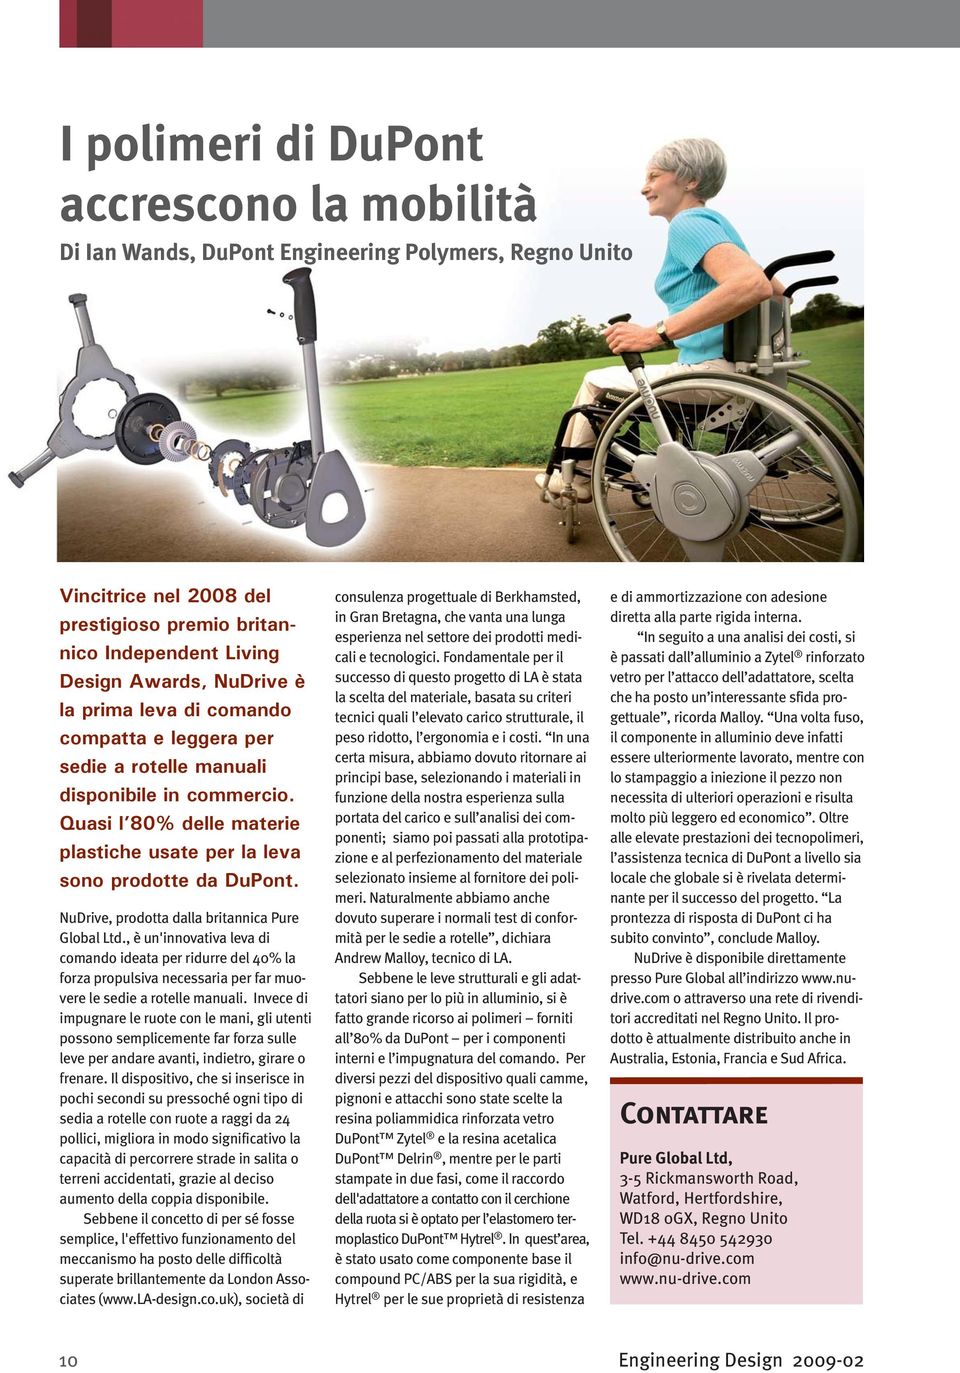 NuDrive, prodotta dalla britannica Pure Global Ltd., è un'innovativa leva di comando ideata per ridurre del 40% la forza propulsiva necessaria per far muovere le sedie a rotelle manuali.